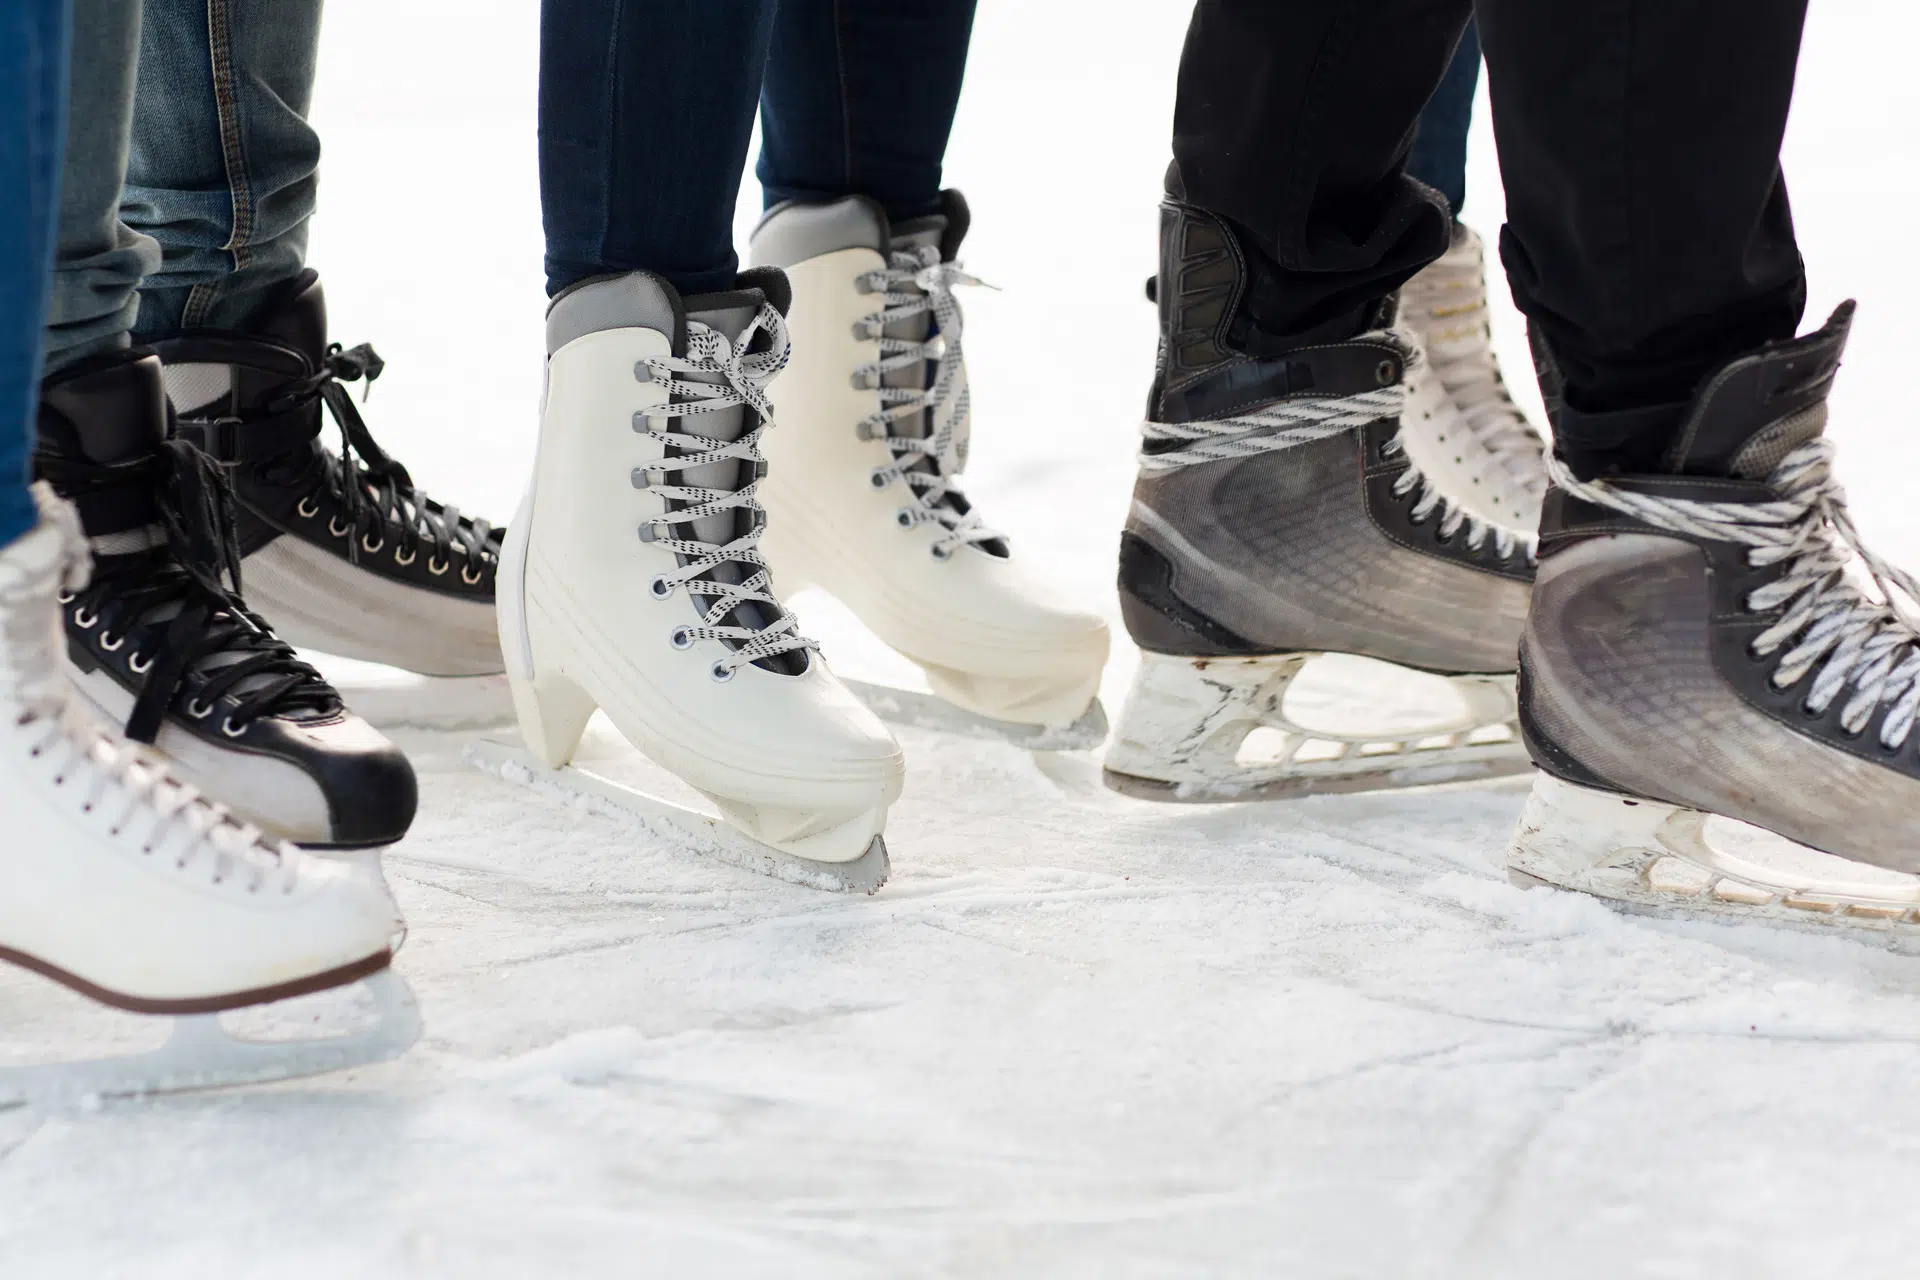 Pied de patin de patineurs intérieur